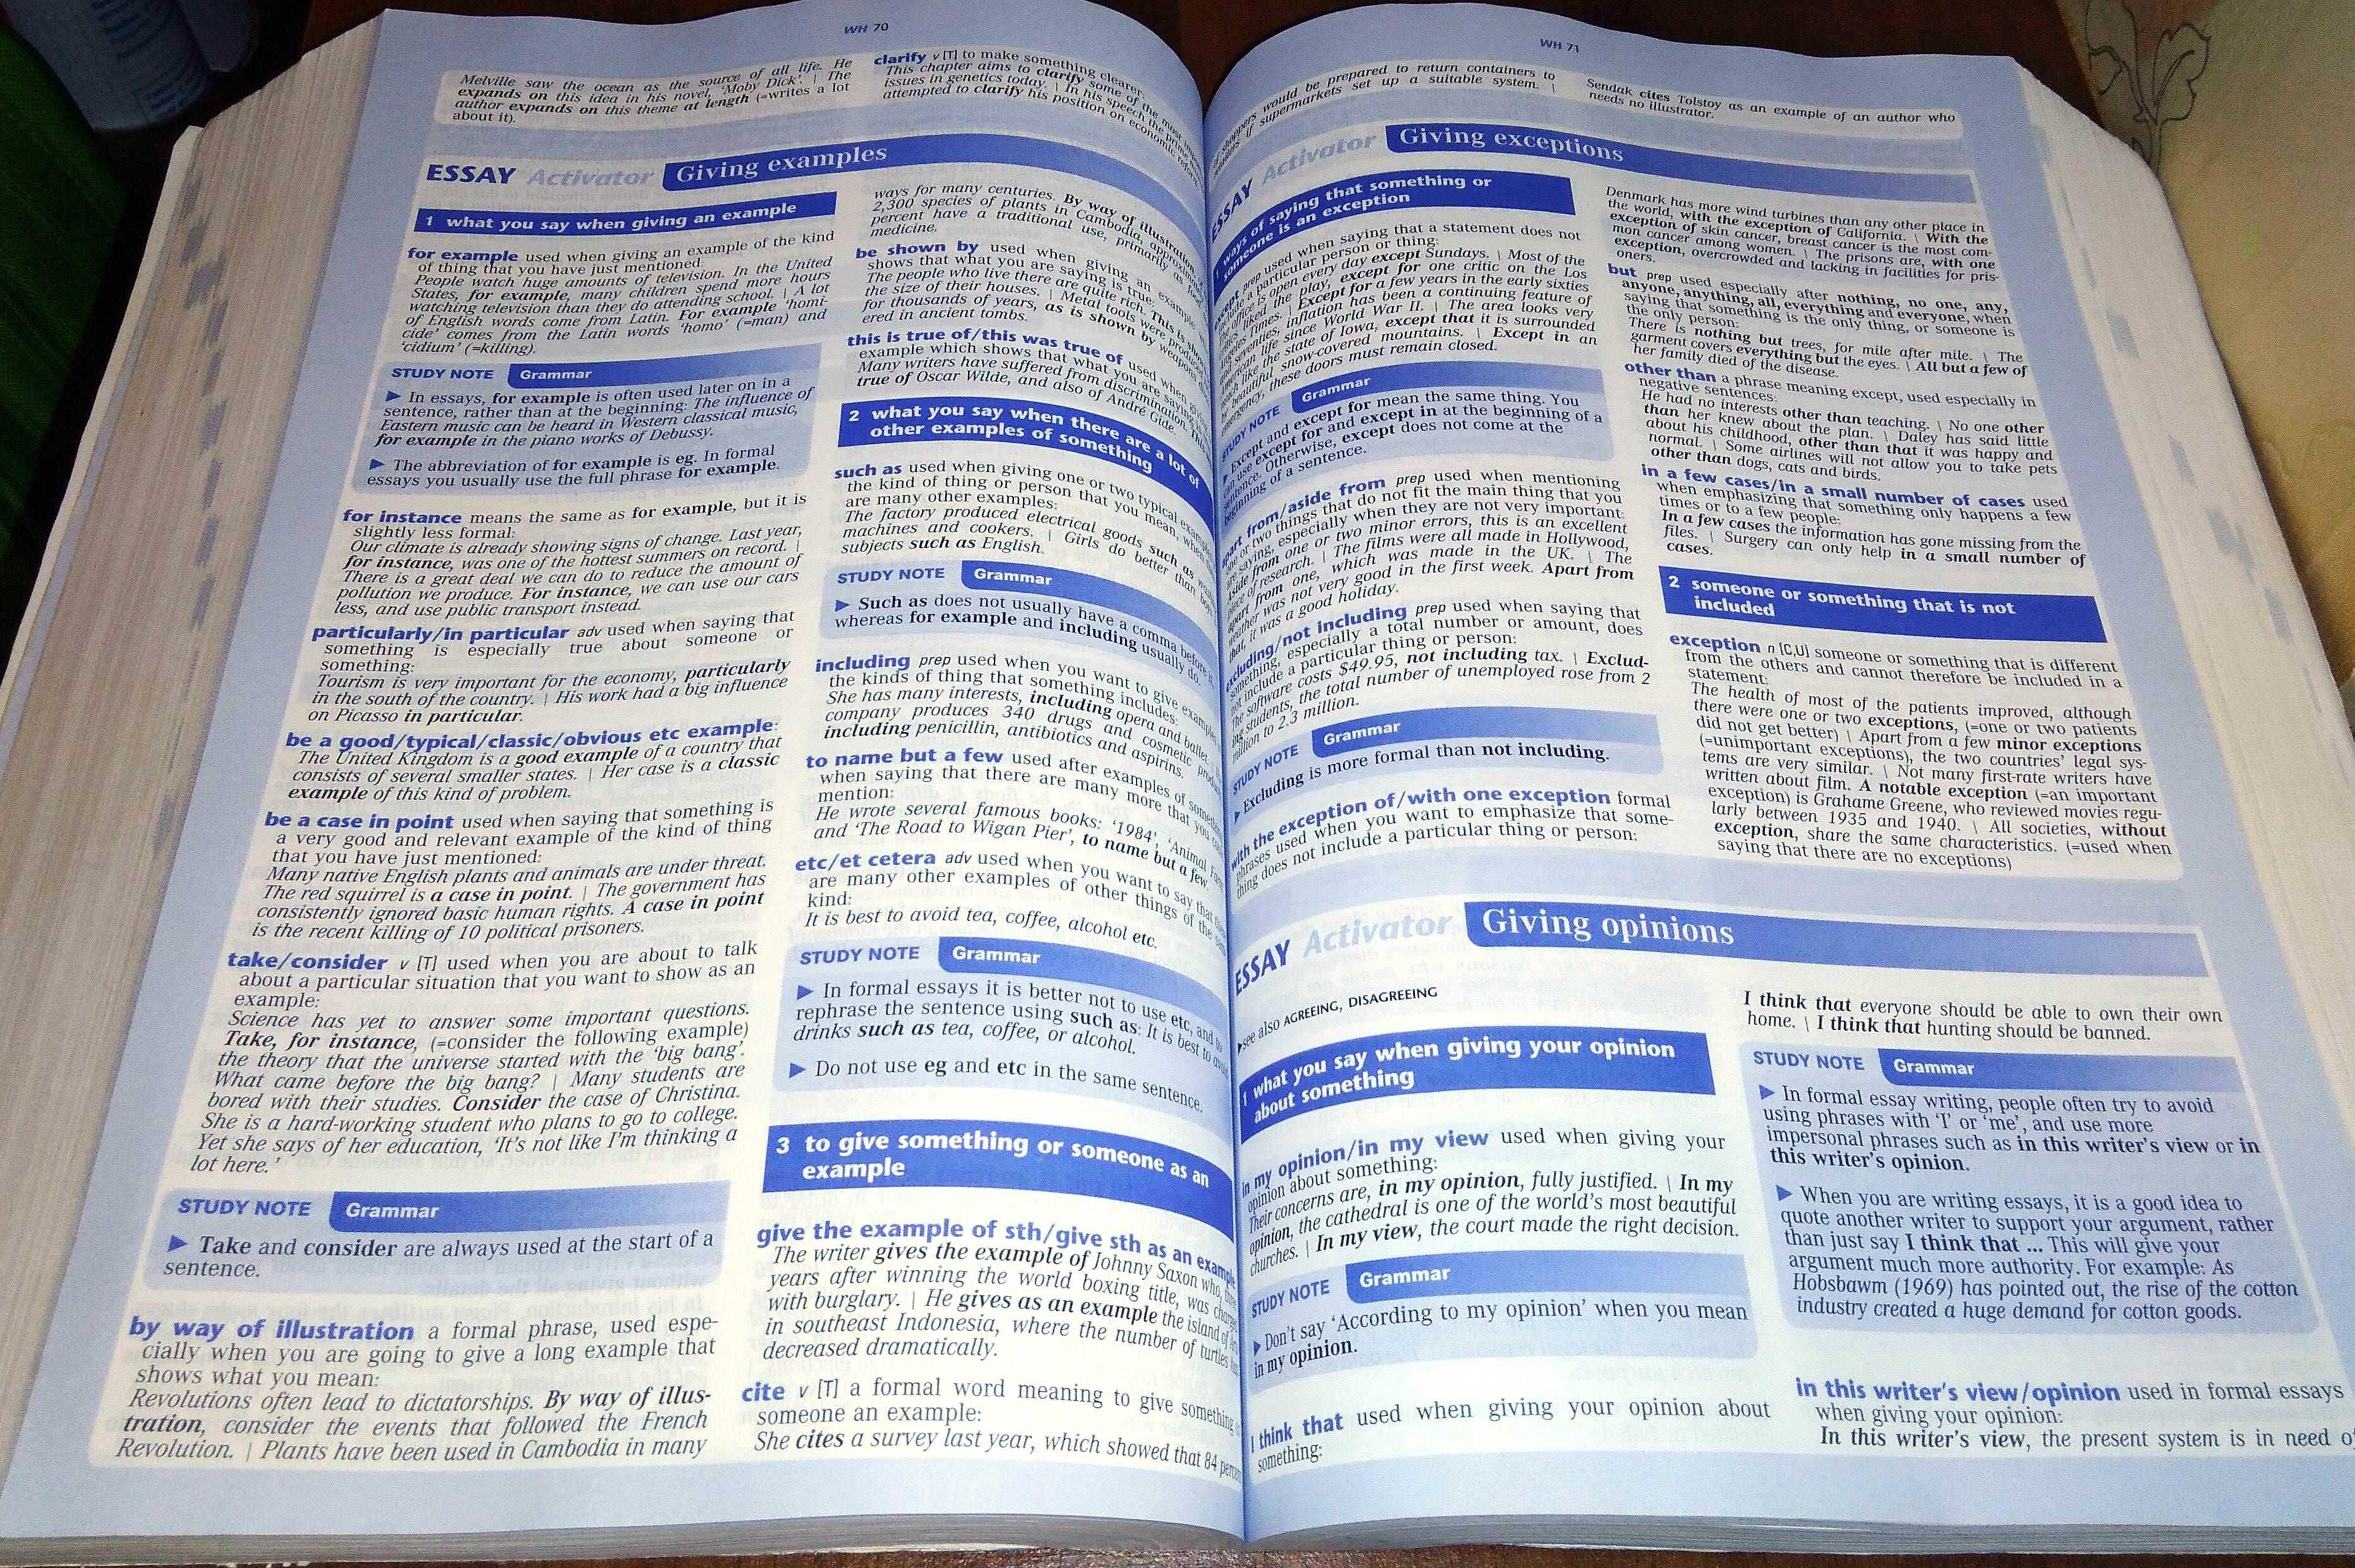 Longman exams dictionary English тлумачний словник англійської мови